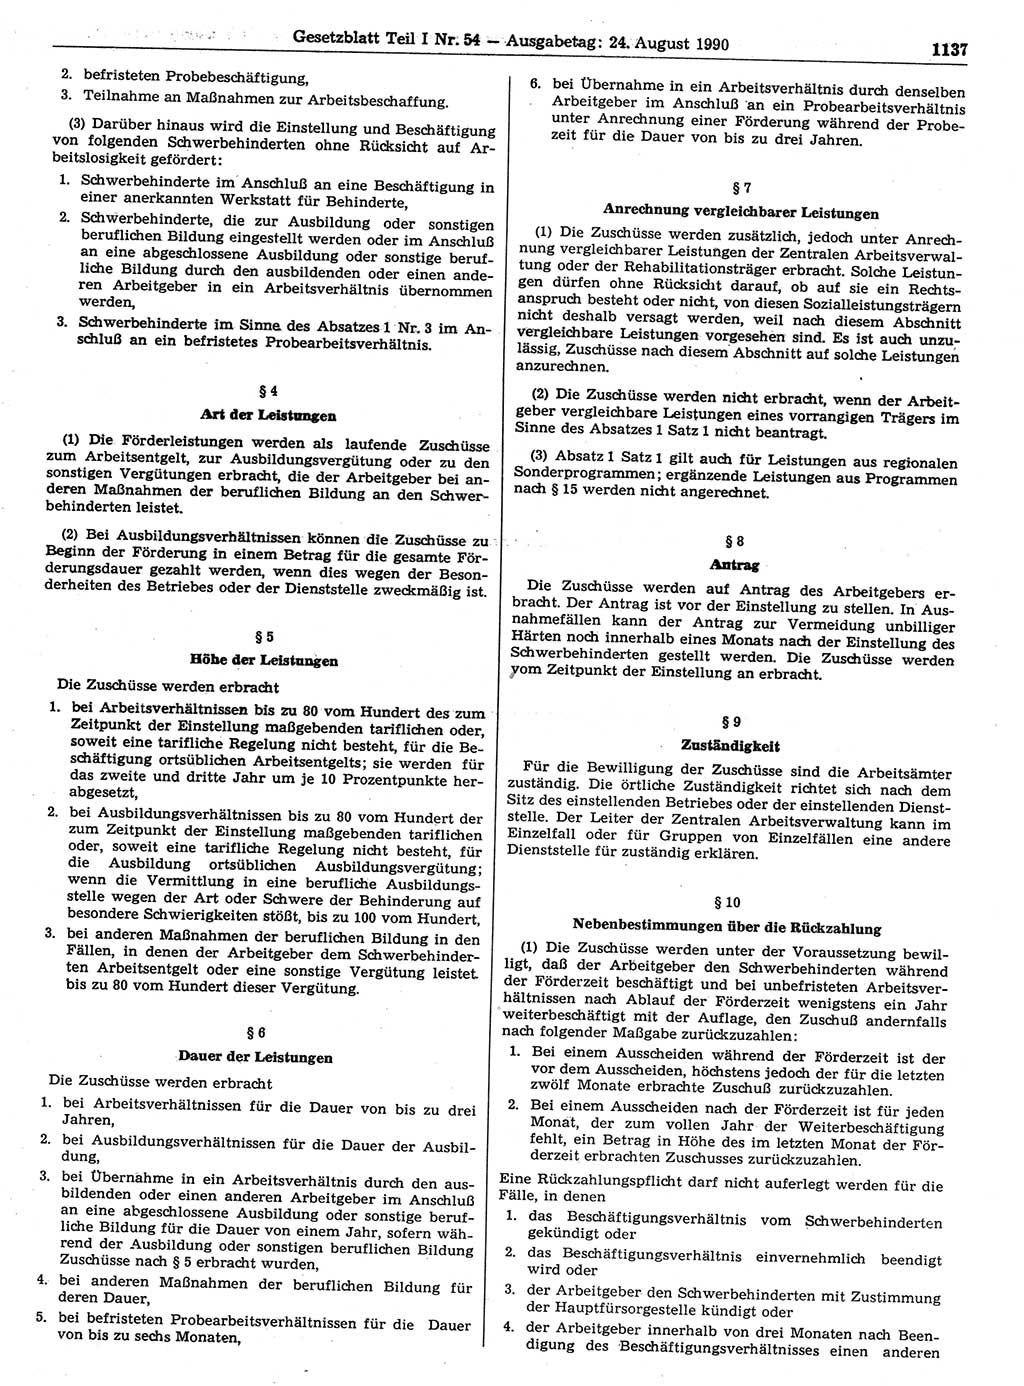 Gesetzblatt (GBl.) der Deutschen Demokratischen Republik (DDR) Teil Ⅰ 1990, Seite 1137 (GBl. DDR Ⅰ 1990, S. 1137)